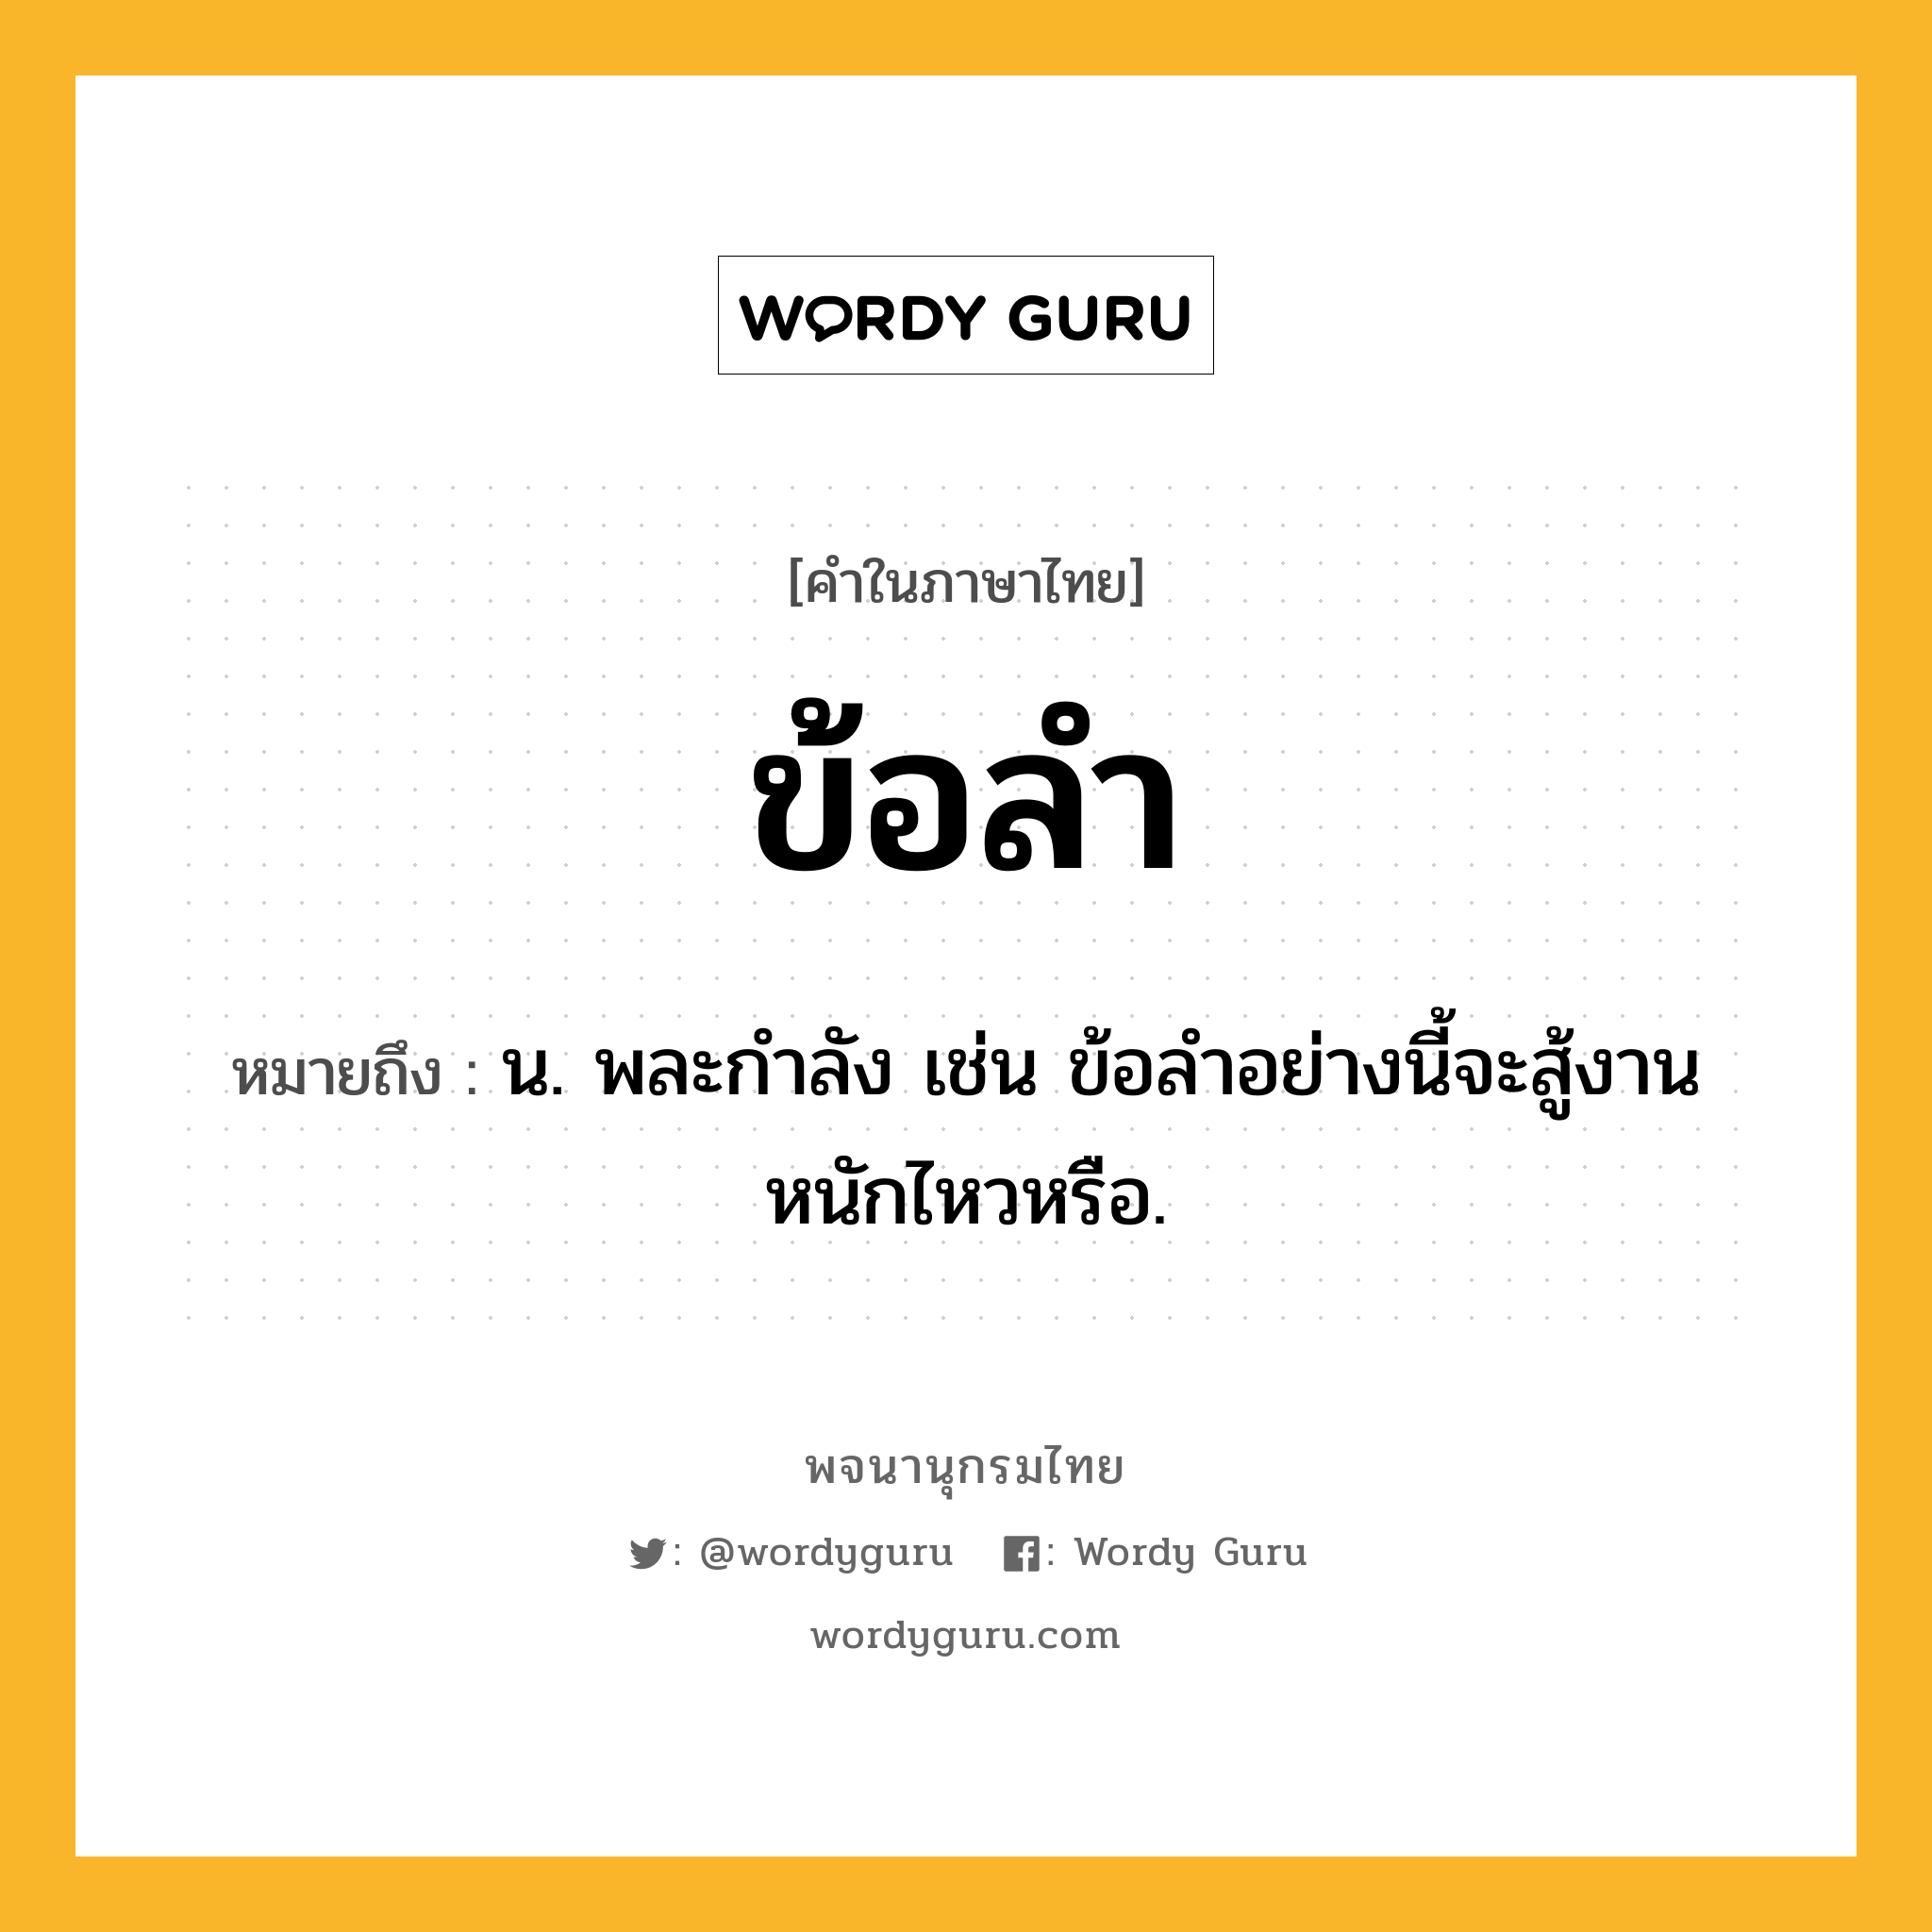 ข้อลำ หมายถึงอะไร?, คำในภาษาไทย ข้อลำ หมายถึง น. พละกำลัง เช่น ข้อลำอย่างนี้จะสู้งานหนักไหวหรือ.